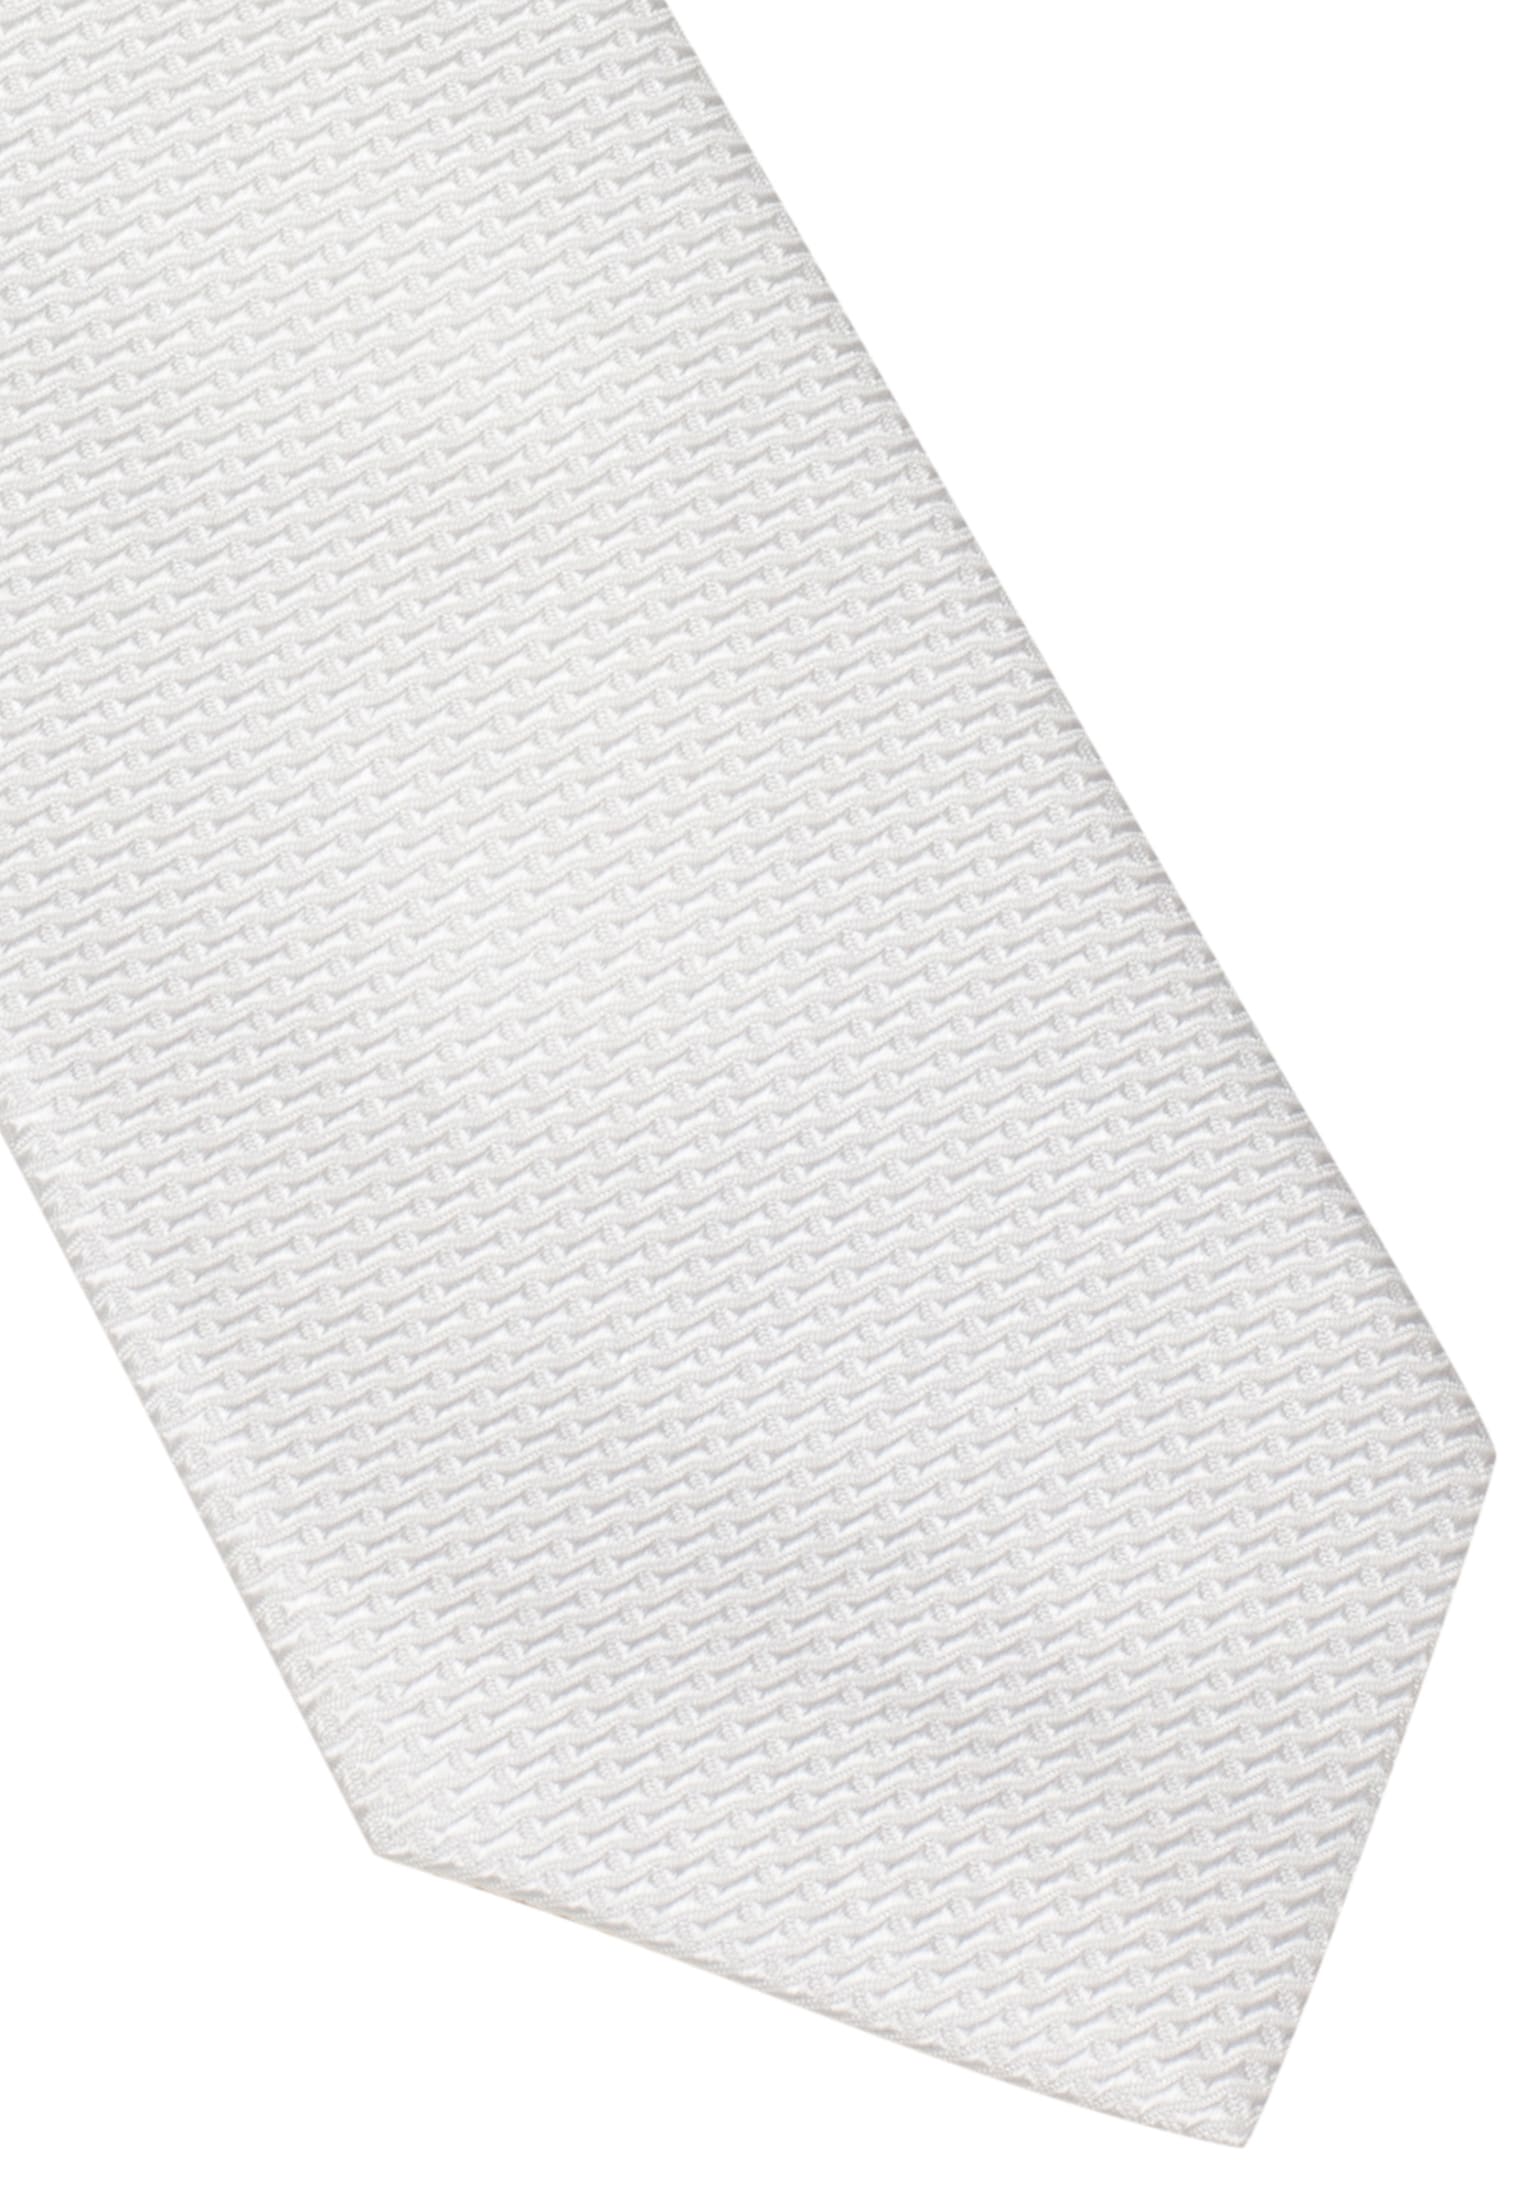 Krawatte in weiß strukturiert | weiß | 142 | 1AC01872-00-01-142